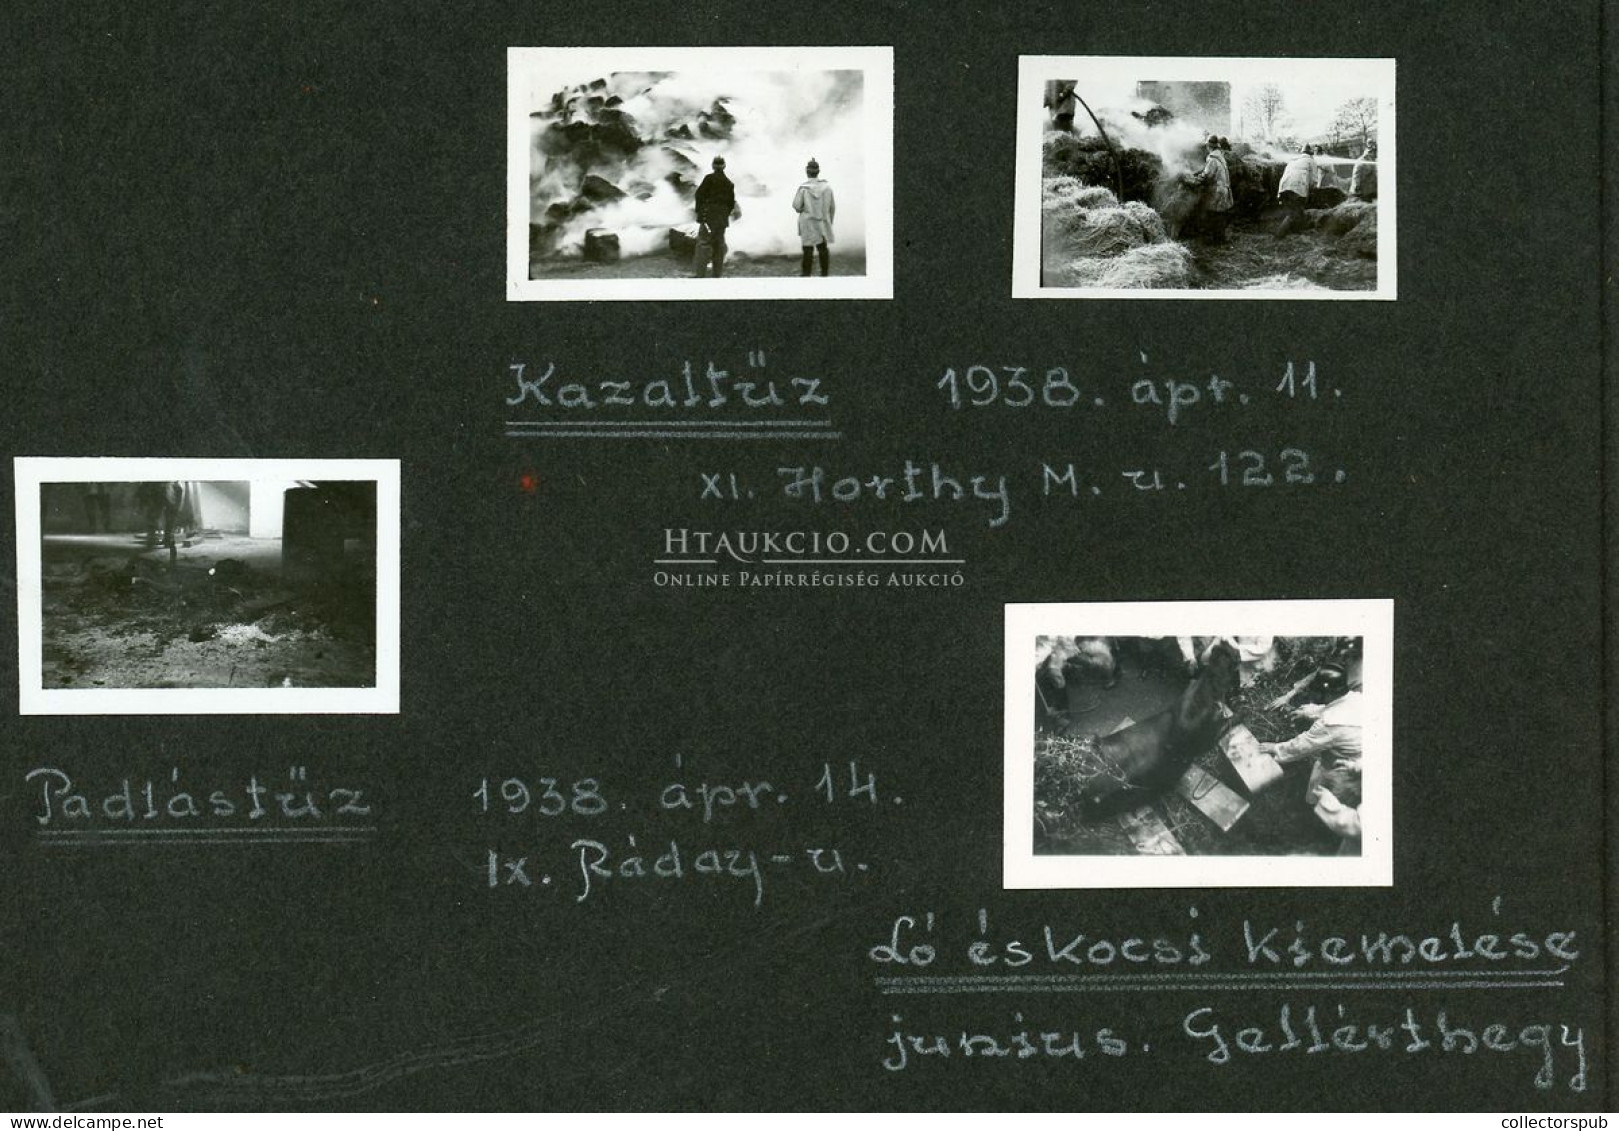 BUDAPEST fire department 1937-39. érdekes, egyedi amatőr fotók ( 4,5*3cm), magyarázó szövegekkel 20db albumlapon!